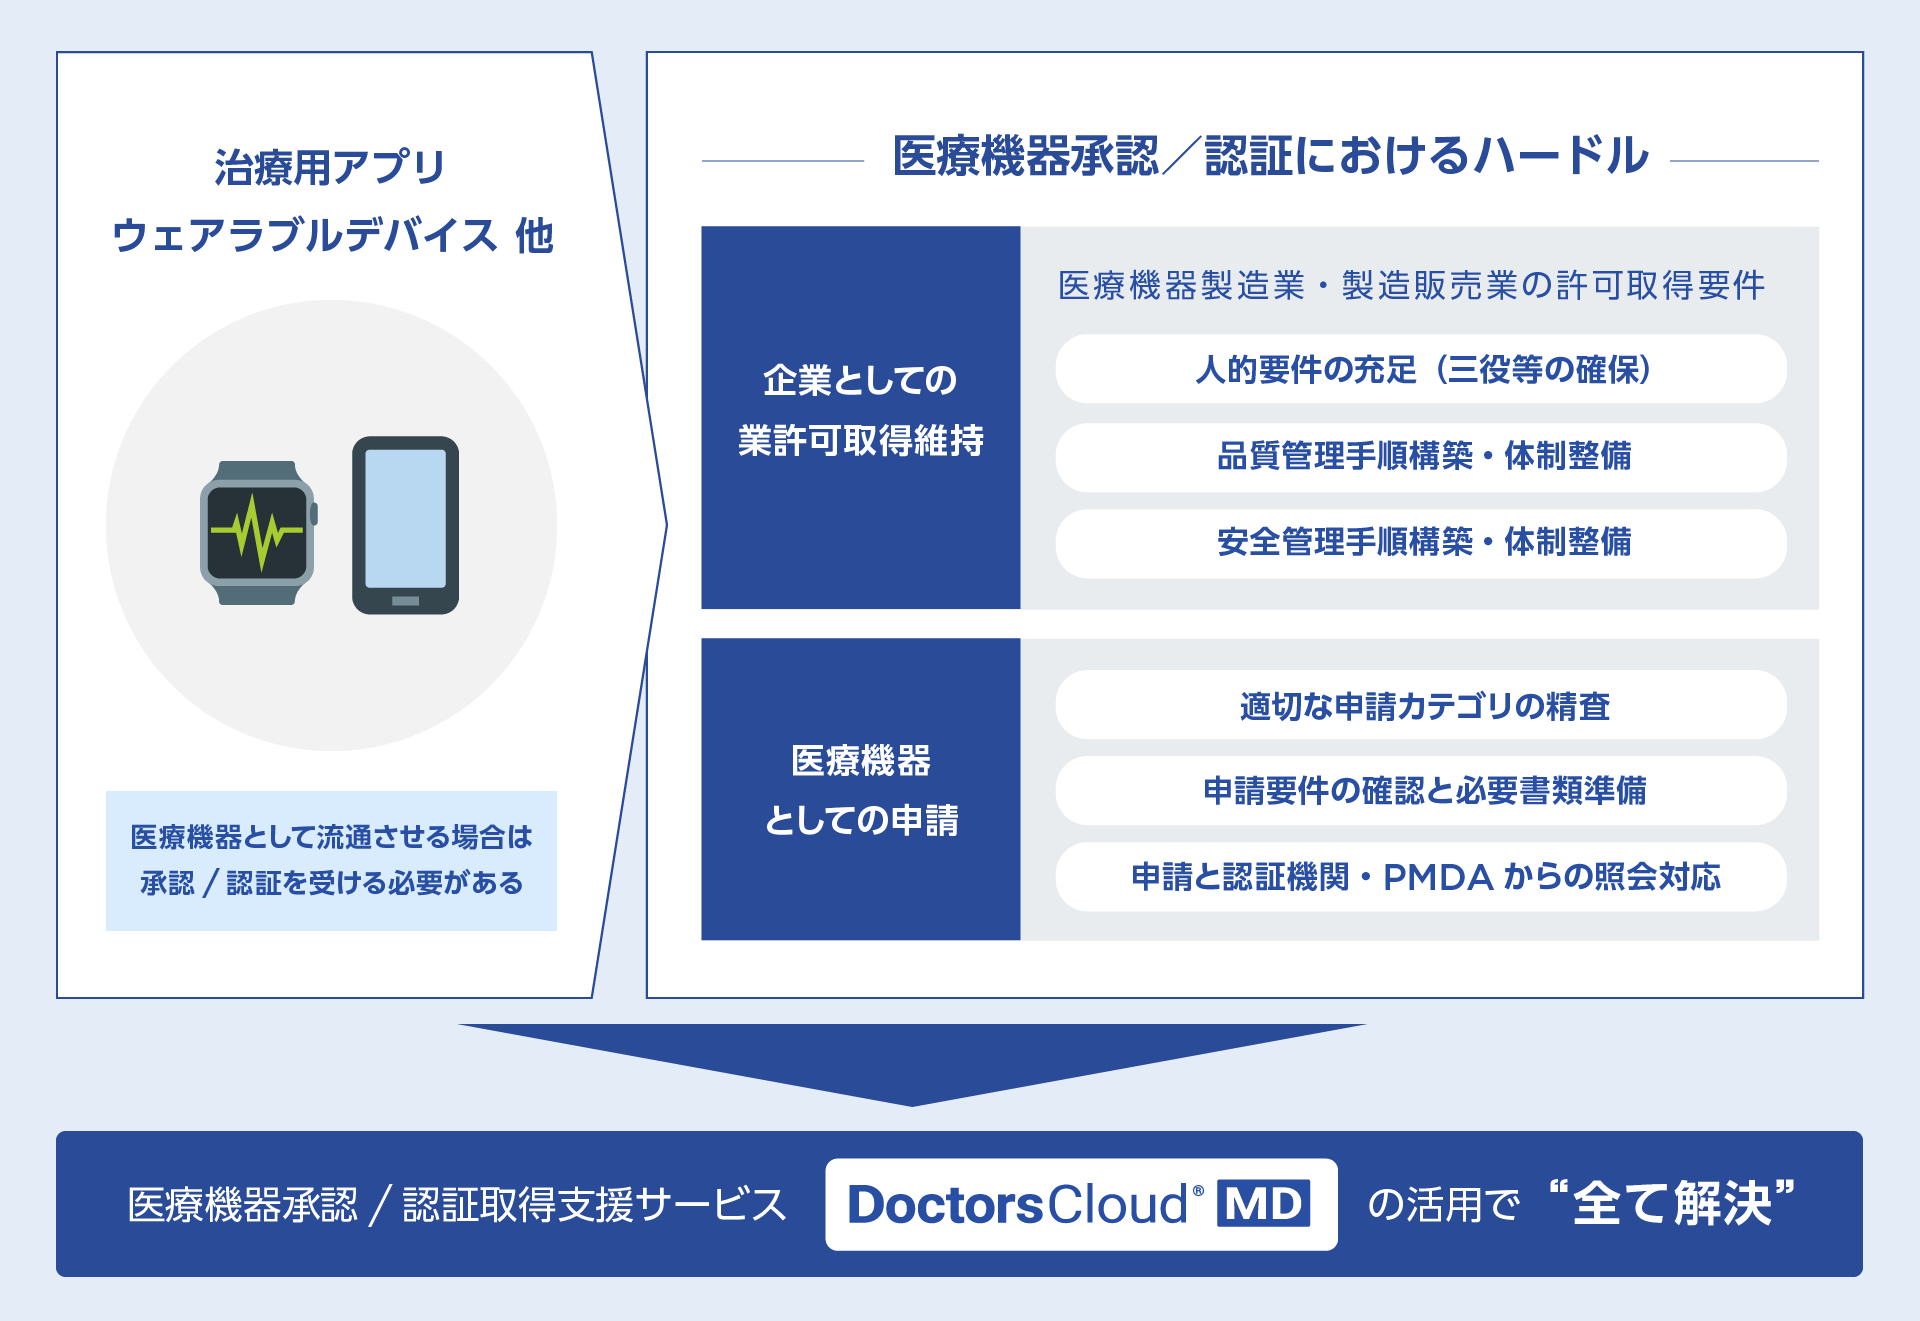 医療機器承認/認証取得支援サービスDoctors Cloud® MDの活用で”全て解決”